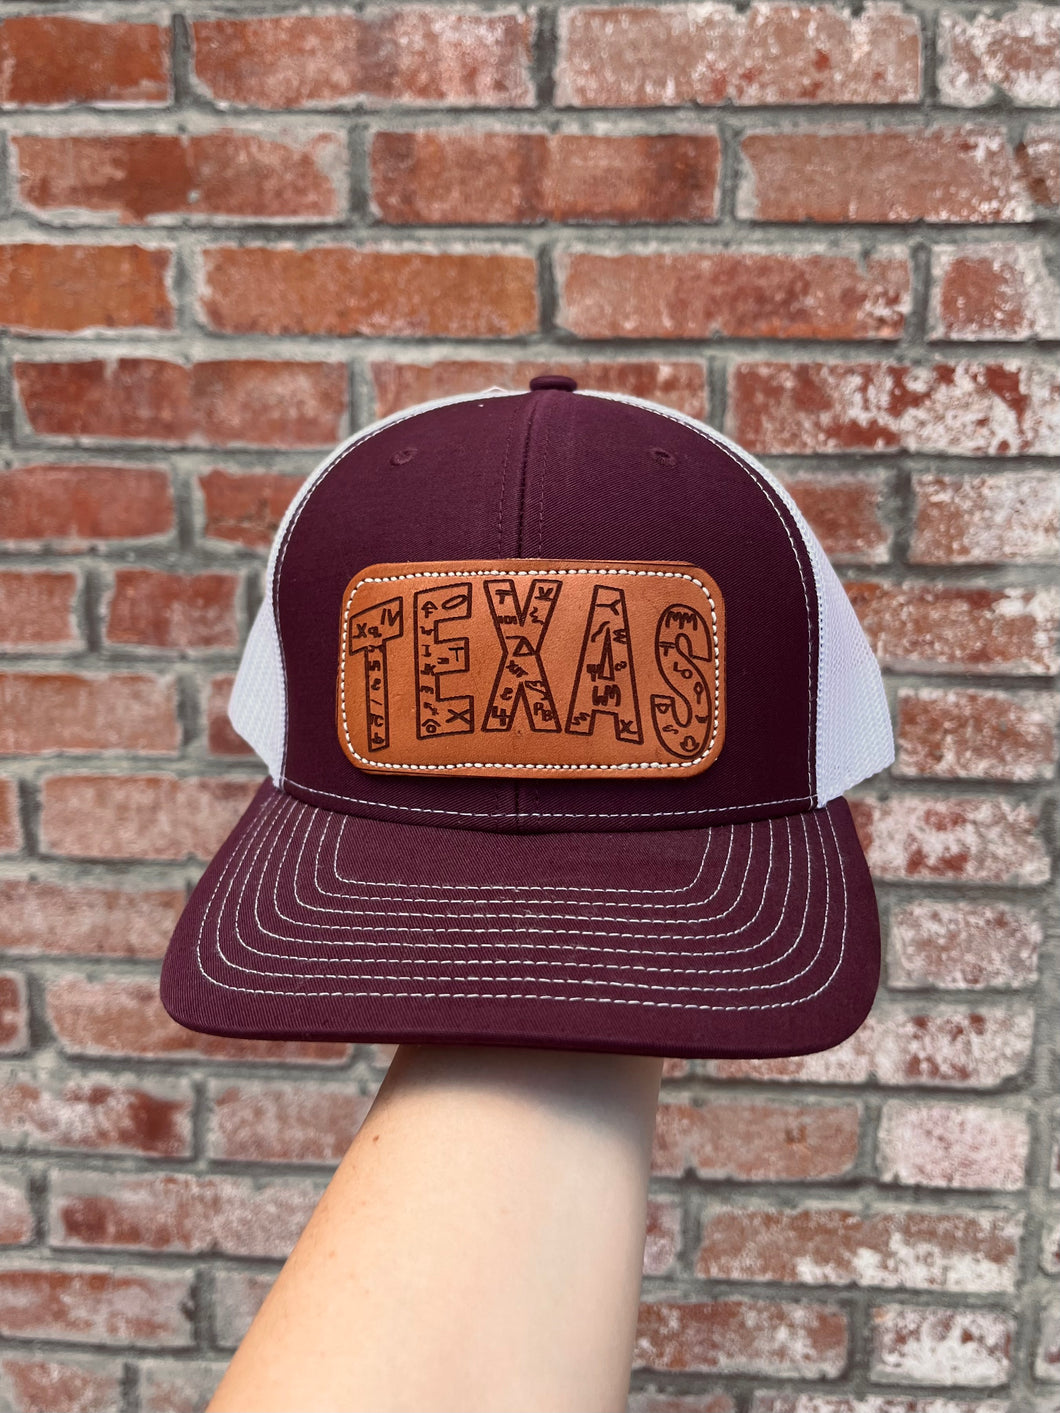 Texas Brands On Maroon Cap